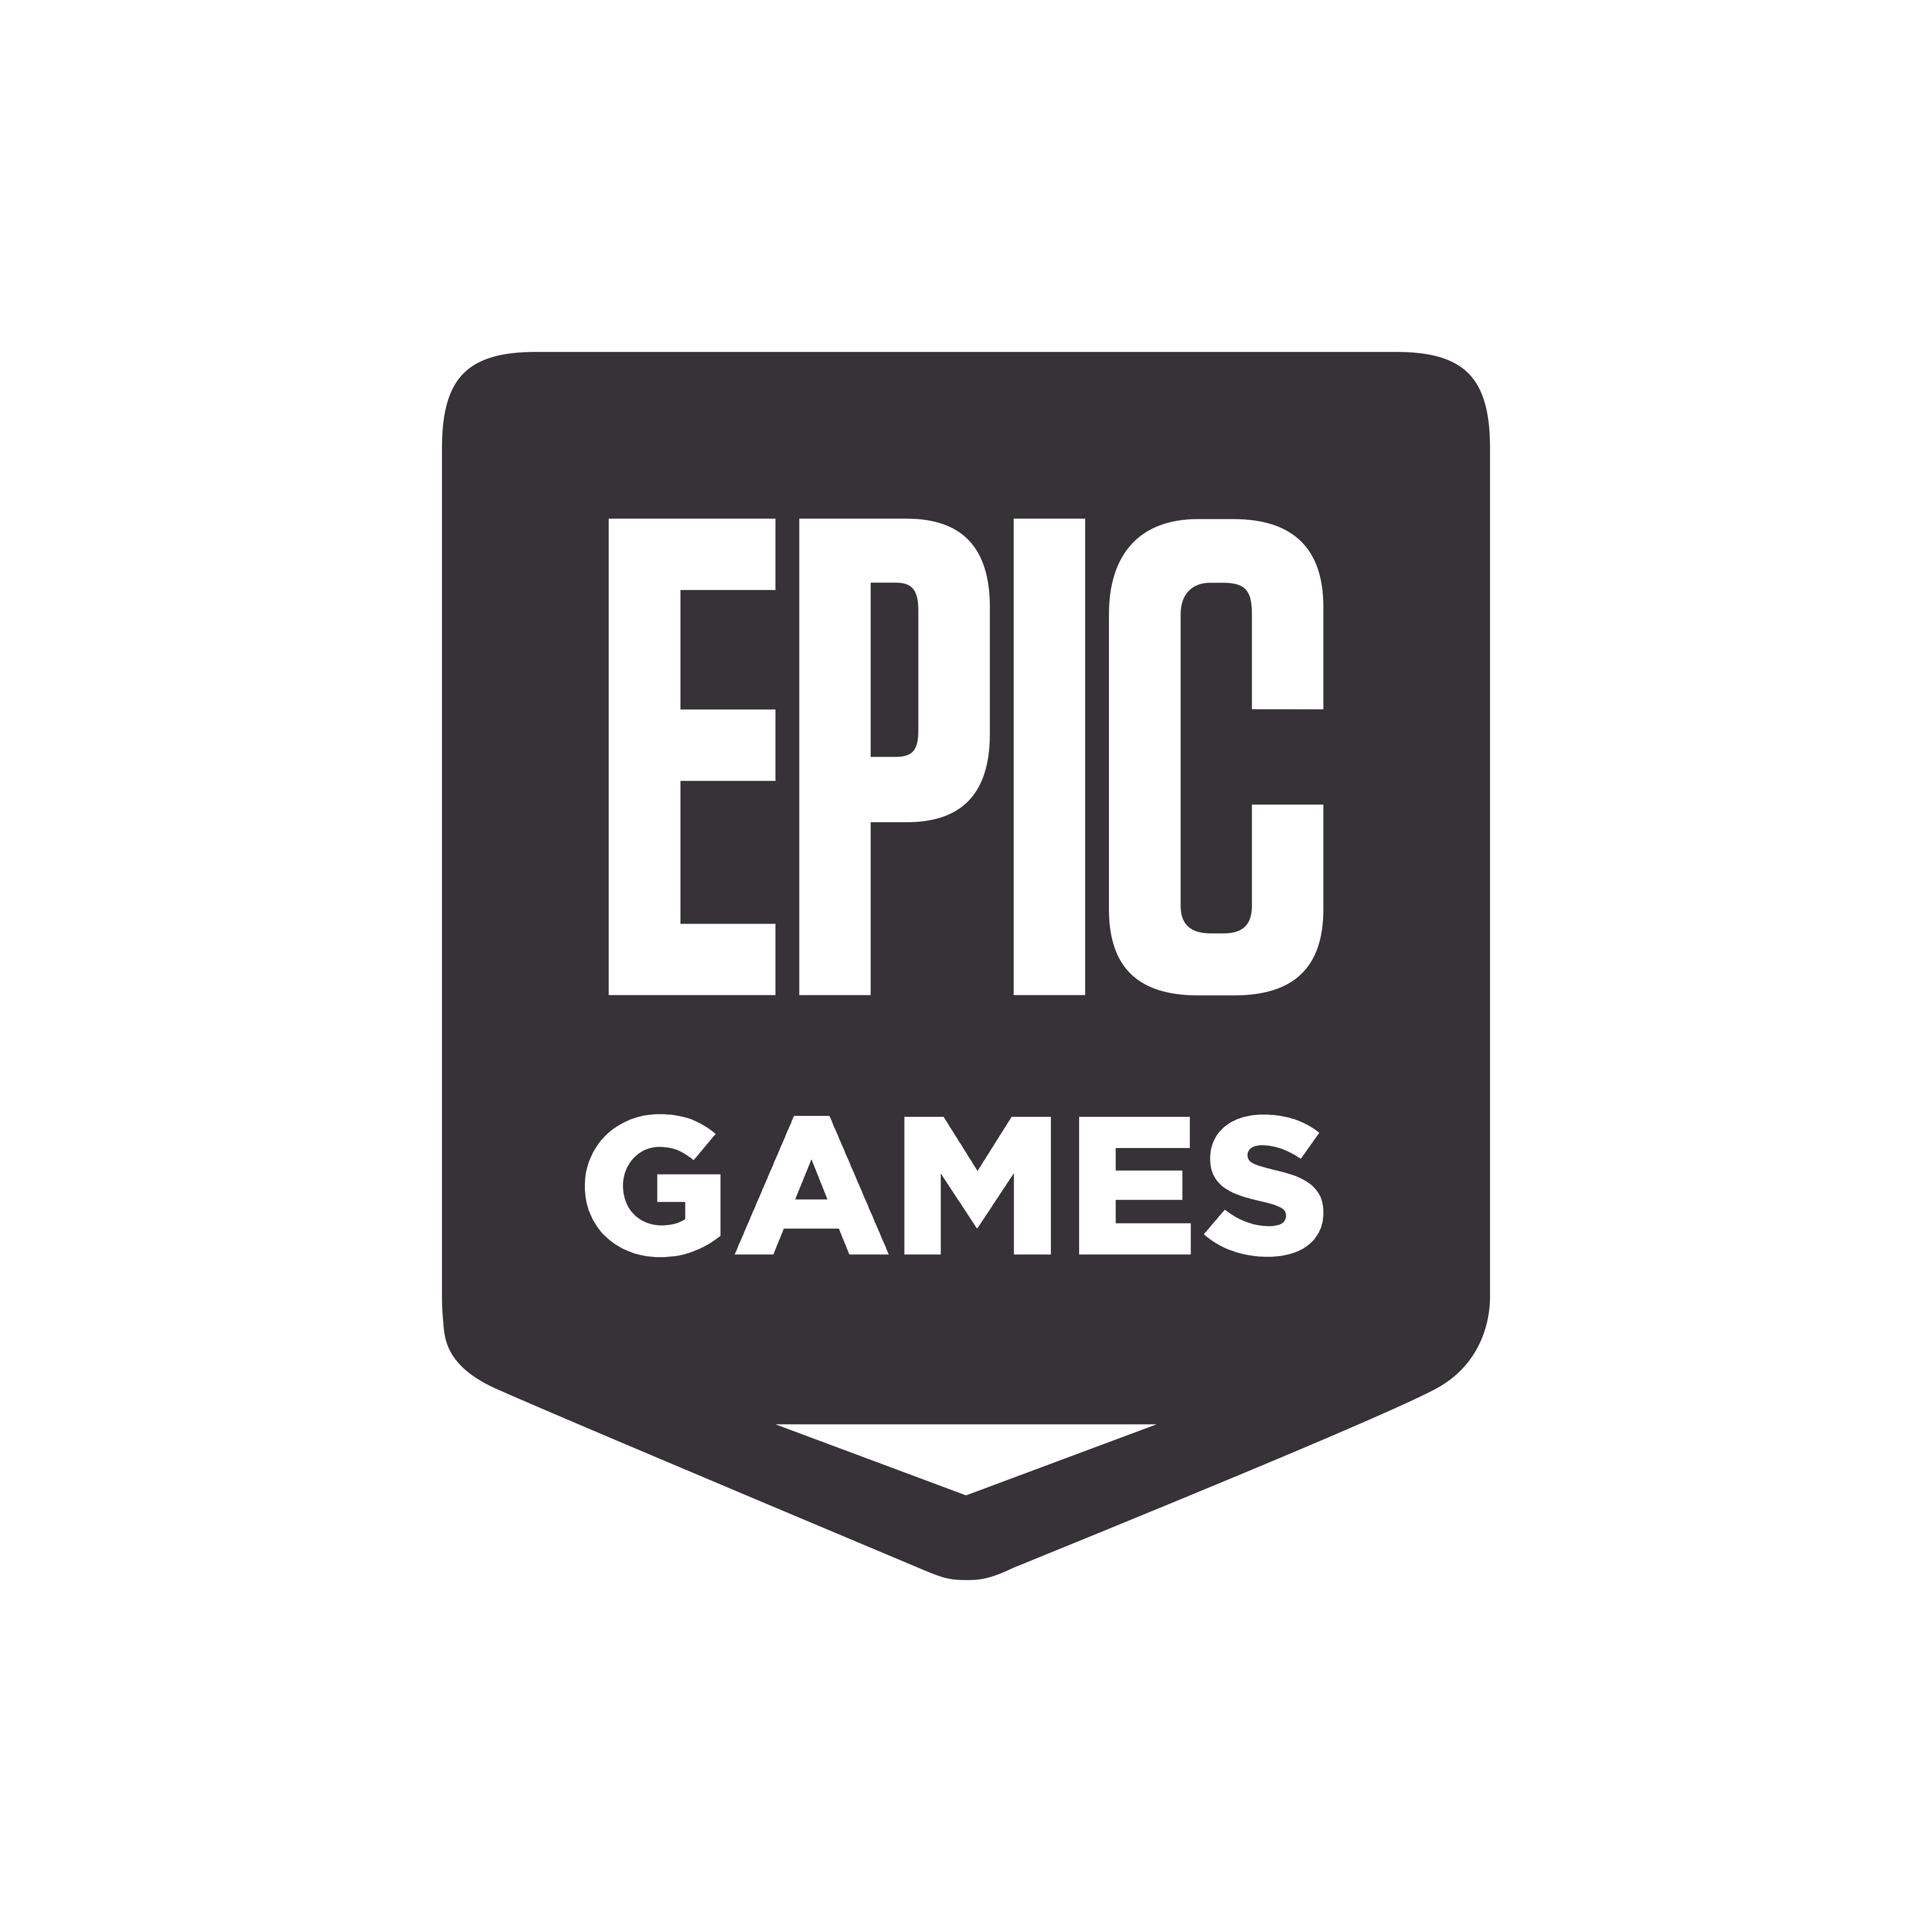 epic games logo 0 - Epic Games Logo